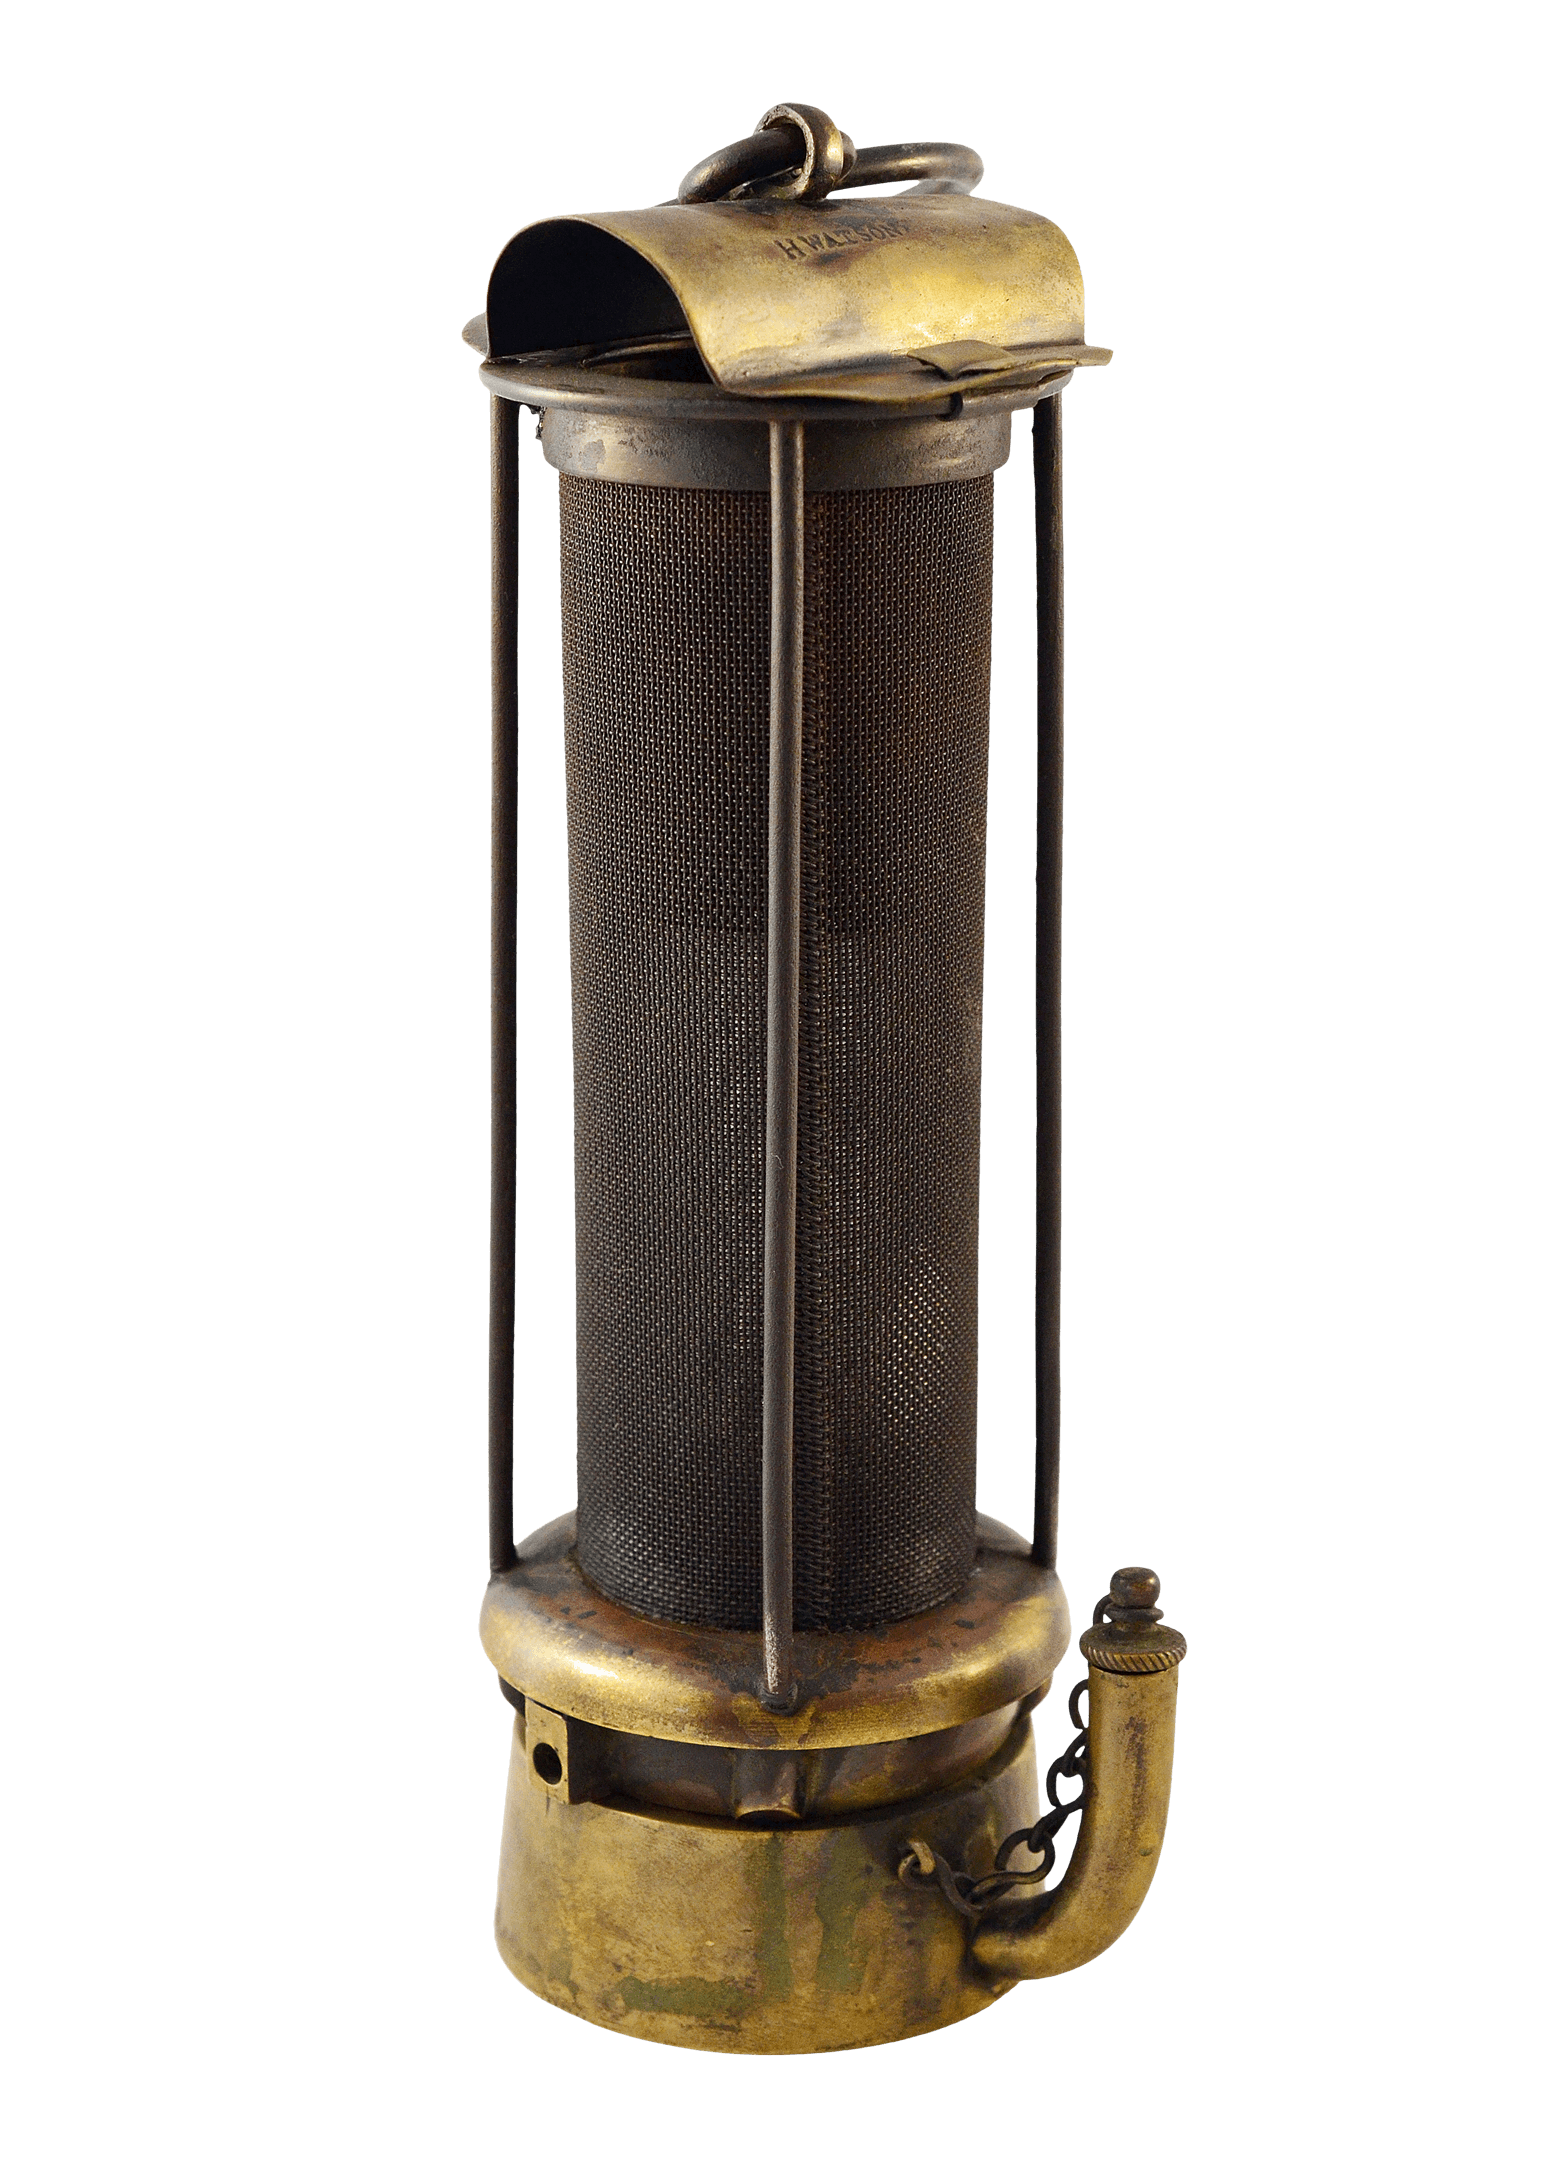 George Stephenson's Geordie lamp